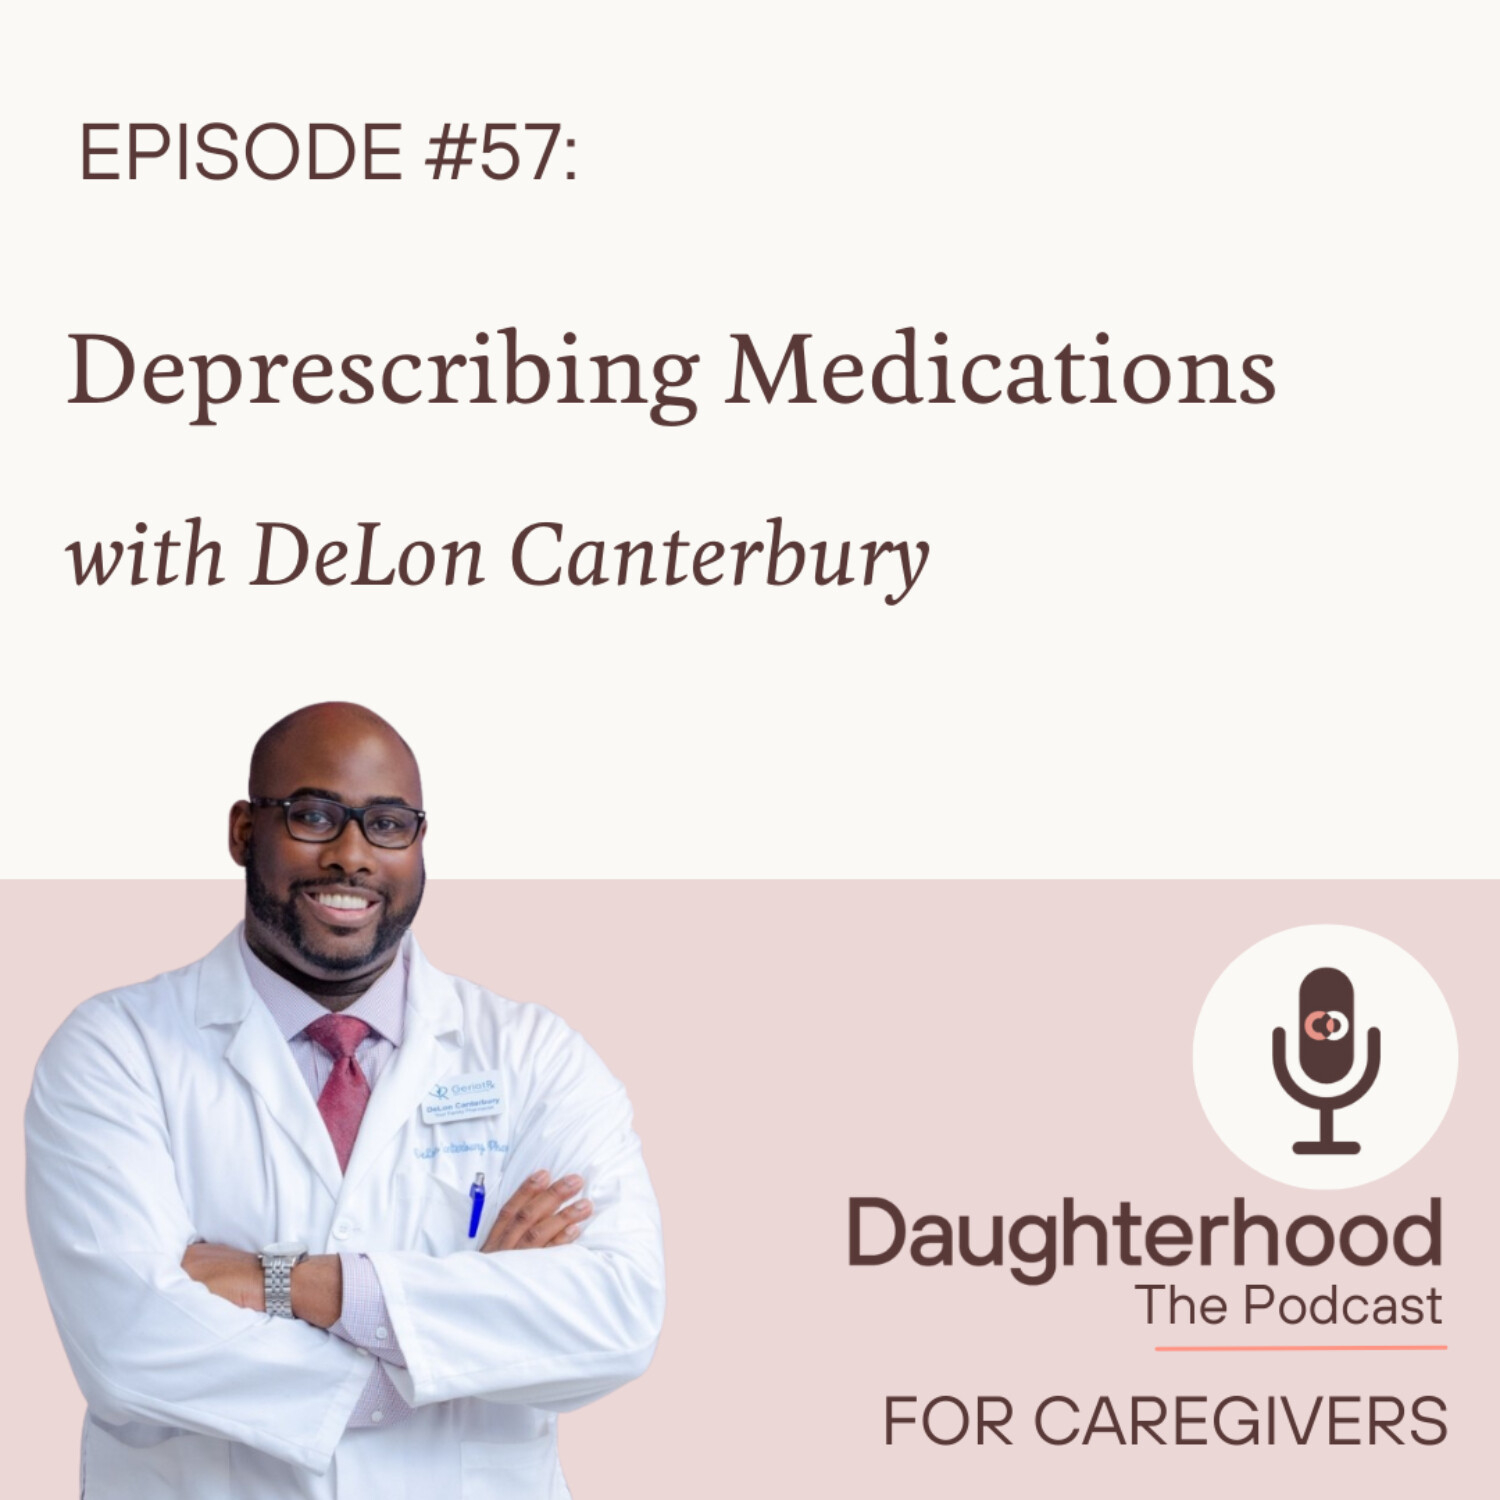 Deprescribing Medications with DeLon Canterbury